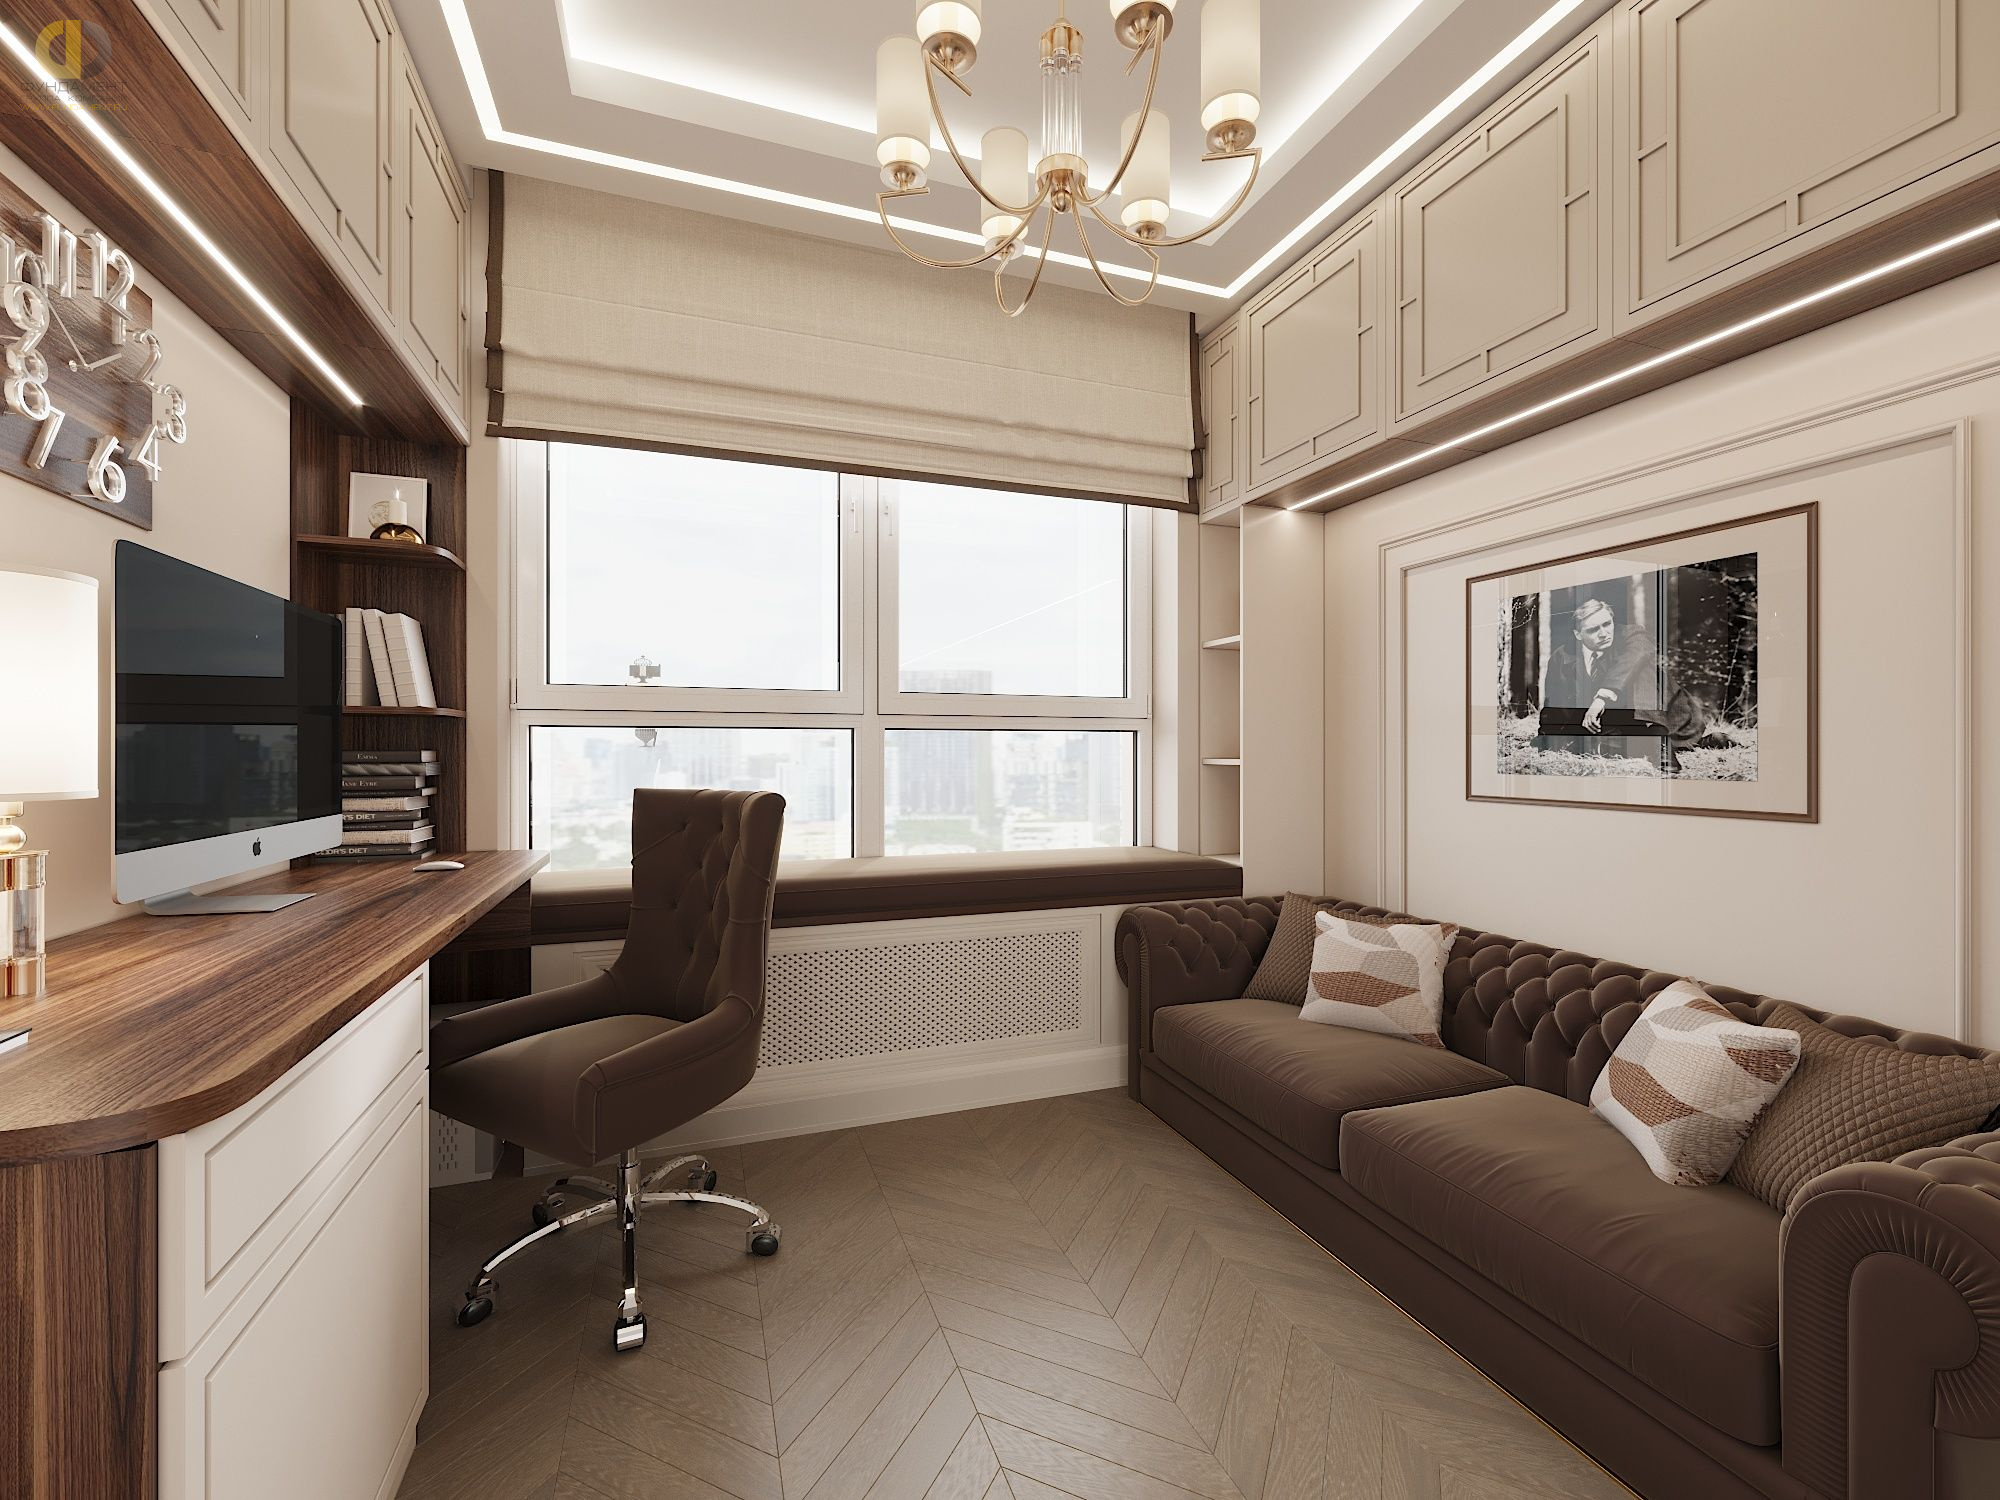 Кабинет в стиле дизайна современный по адресу г. Москва, Шелепихинская набережная, дом 34, 2021 года